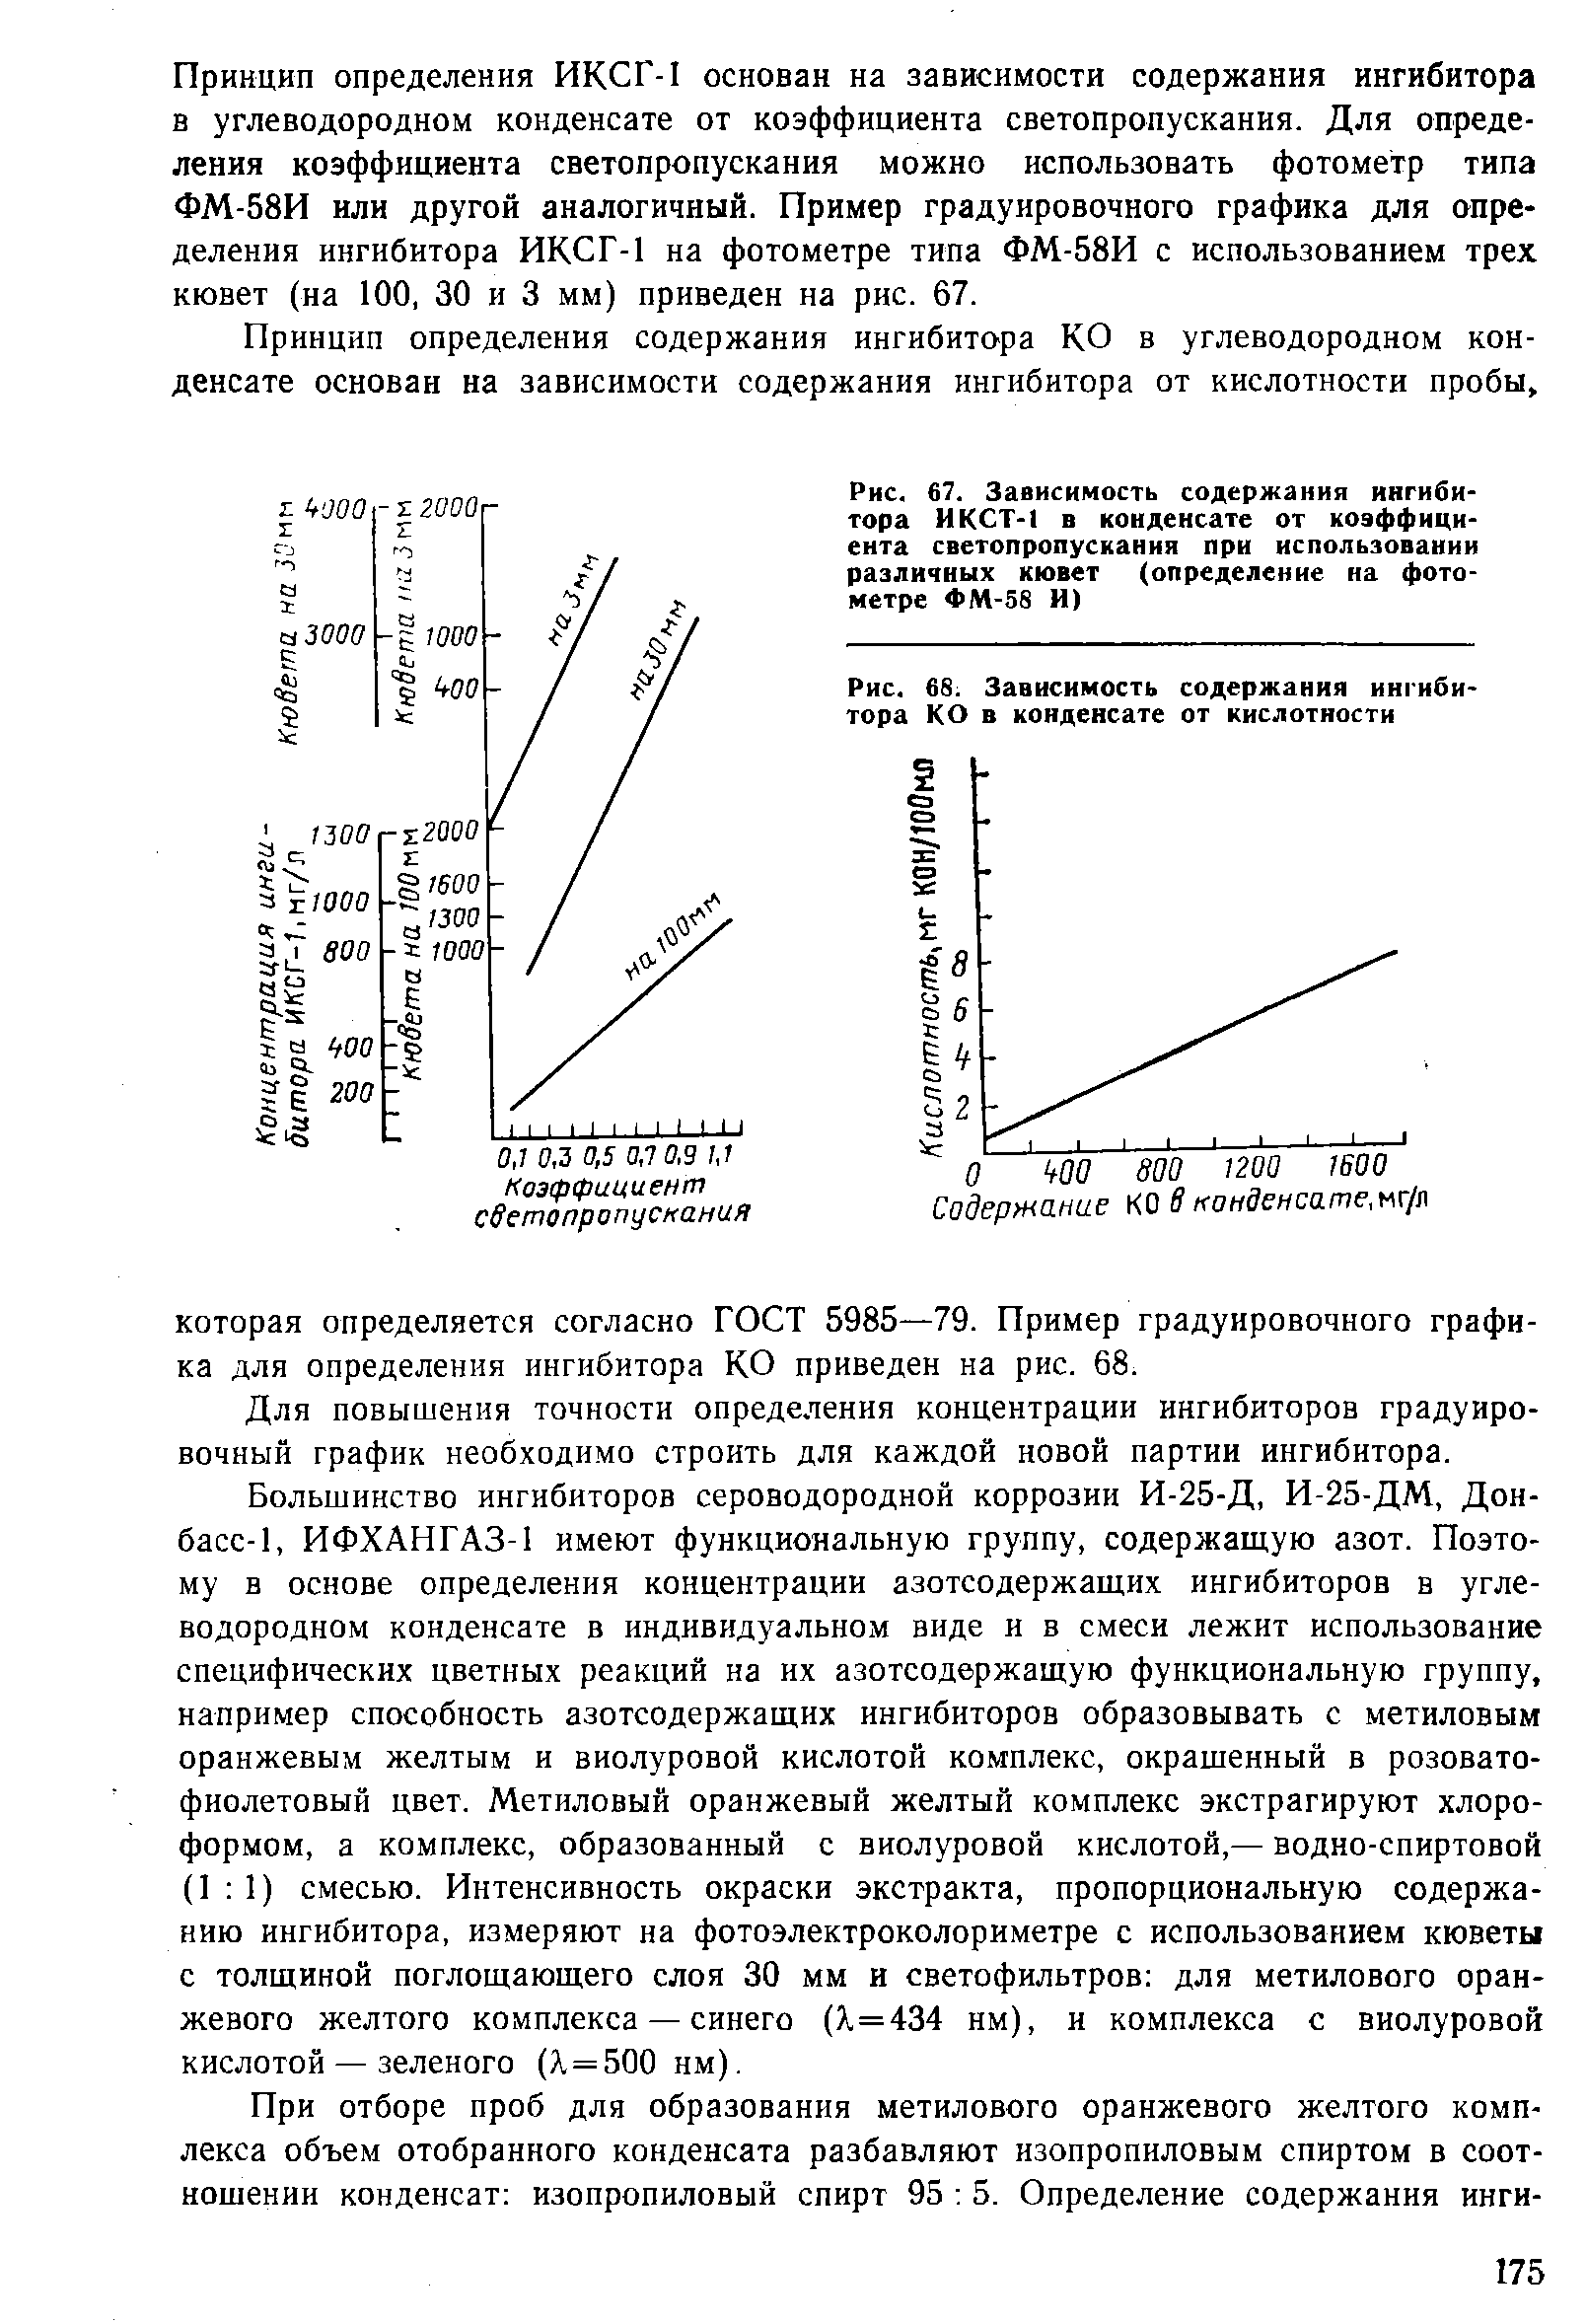 Рис. 6S. Зависимость содержания ингибитора КО в конденсате от кислотности
